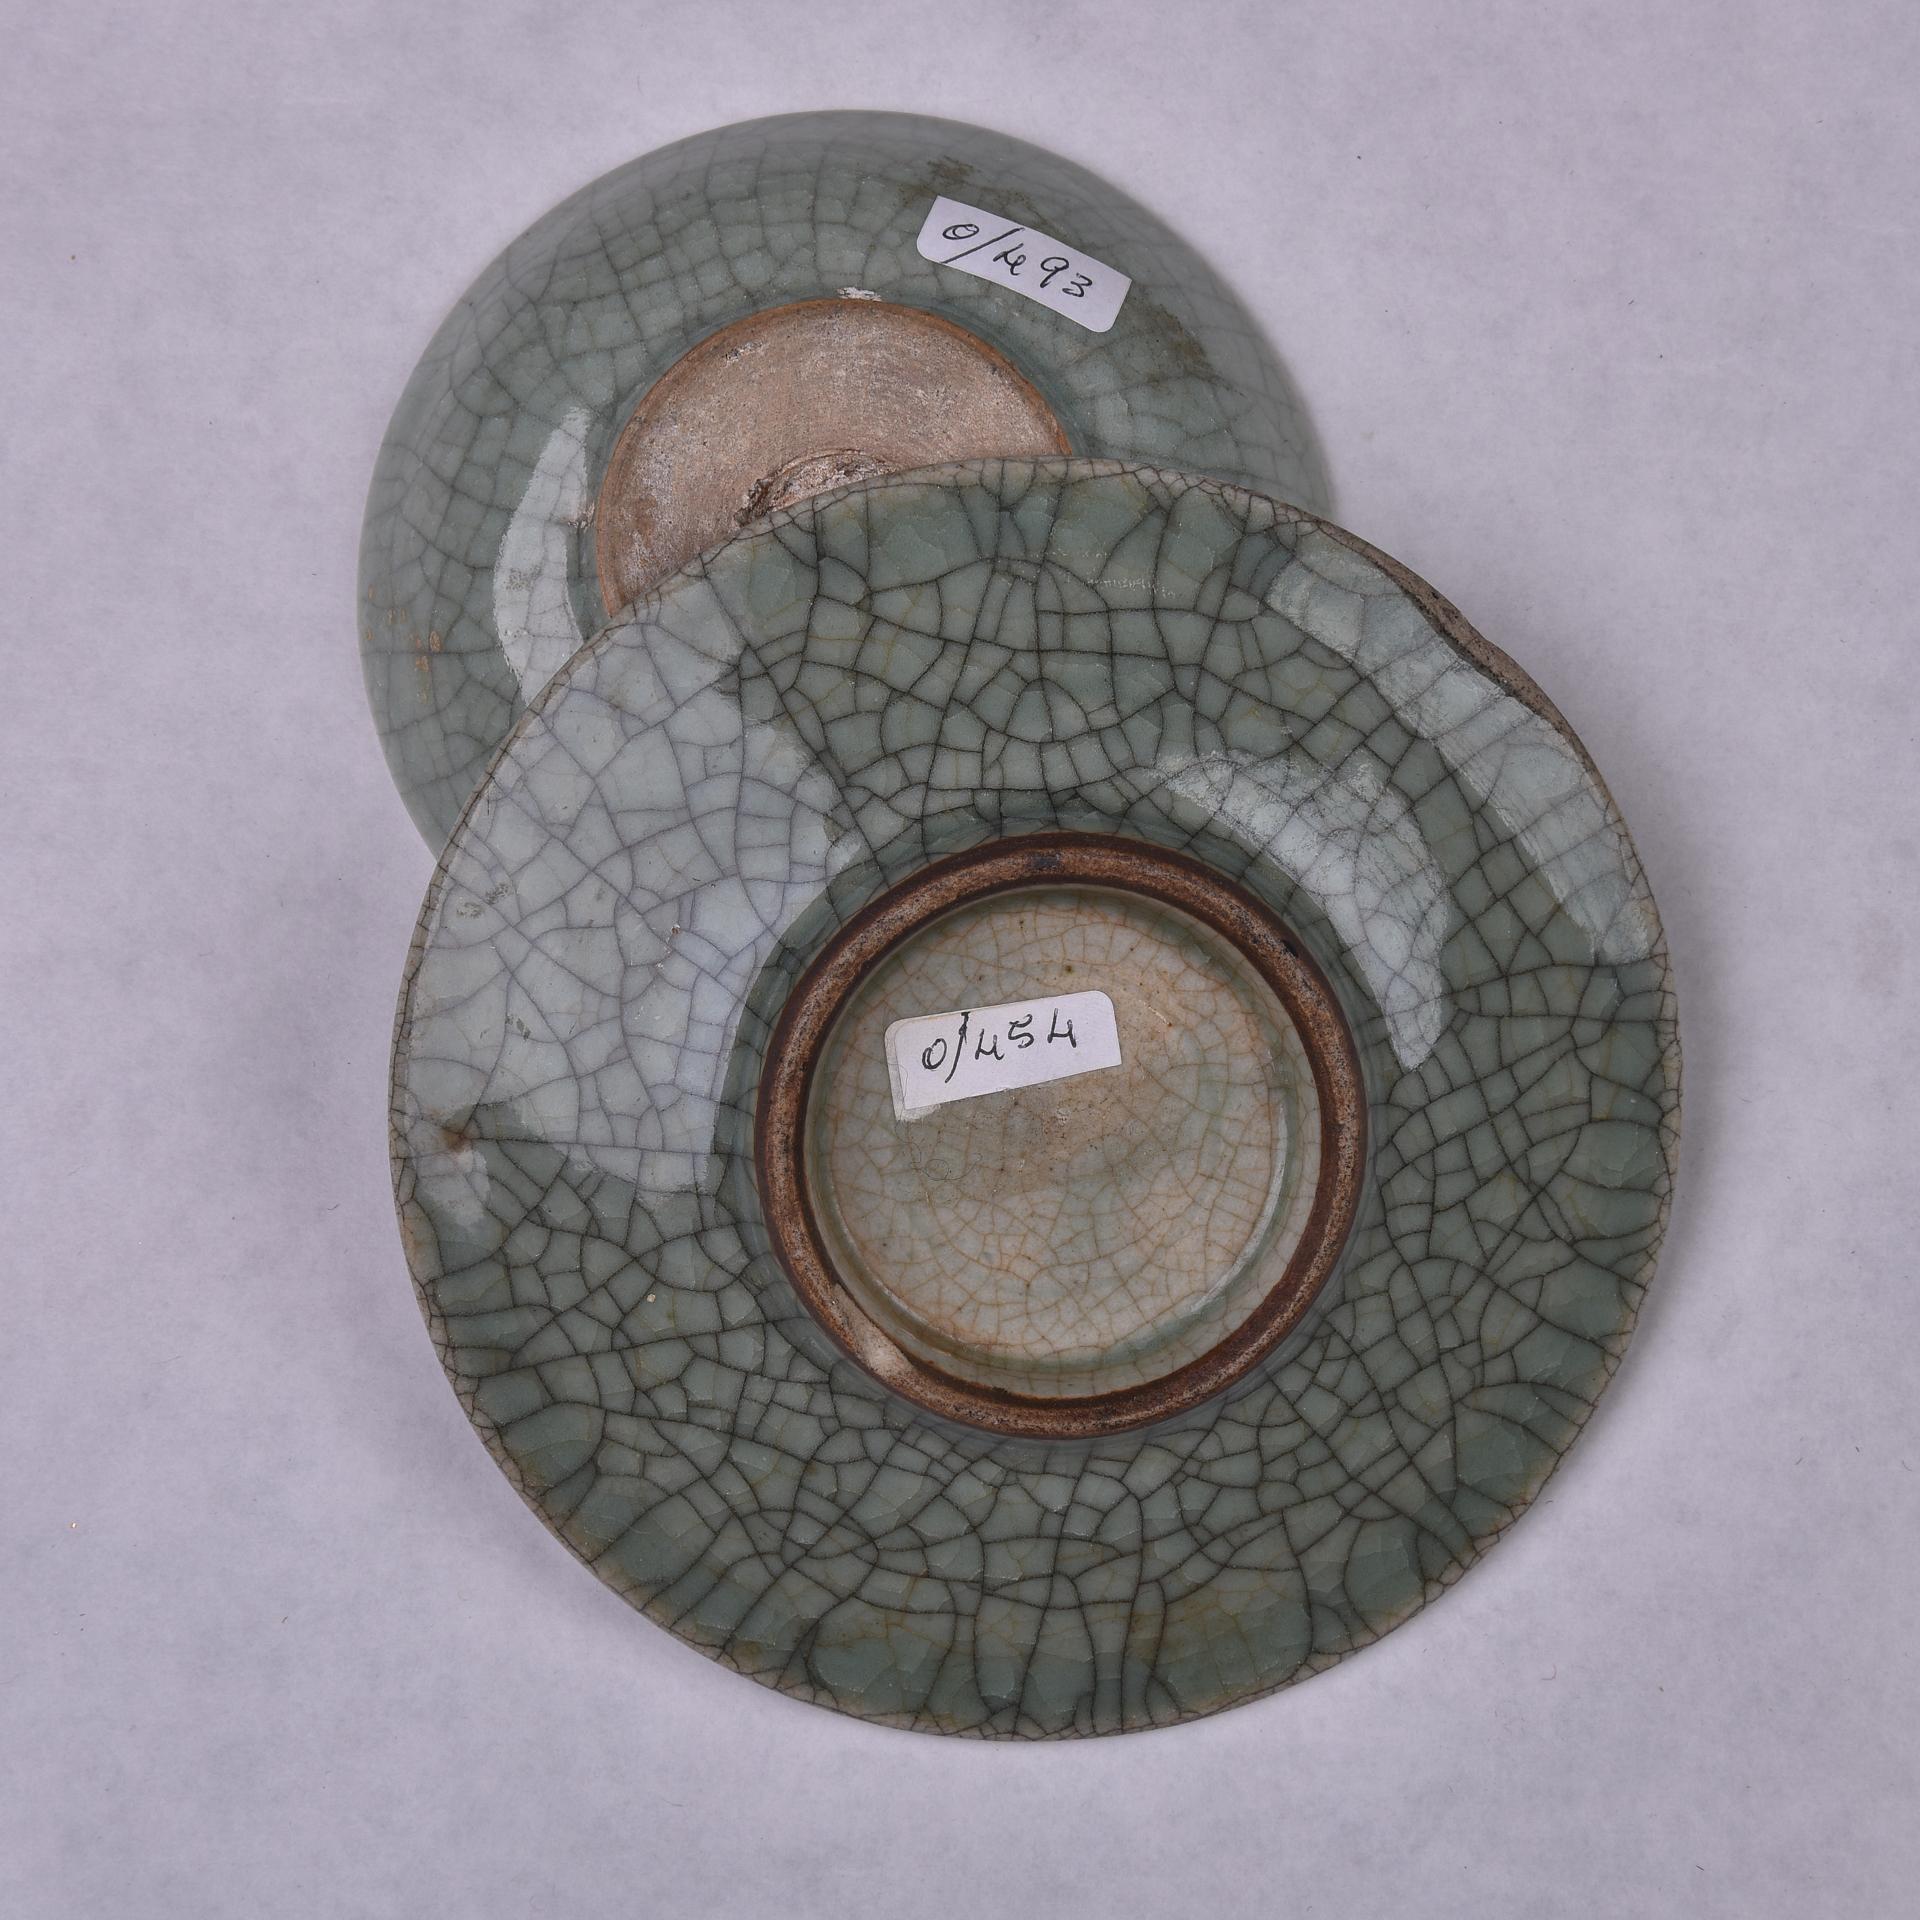 Kleine chinesische Celadon-Teller aus meiner Privatsammlung, die vor etwa 35 Jahren entstand und nie öffentlich ausgestellt wurde. 
Die veröffentlichten Größen beziehen sich auf die größte; die andere hat einen Durchmesser von 10,4 und eine Höhe von